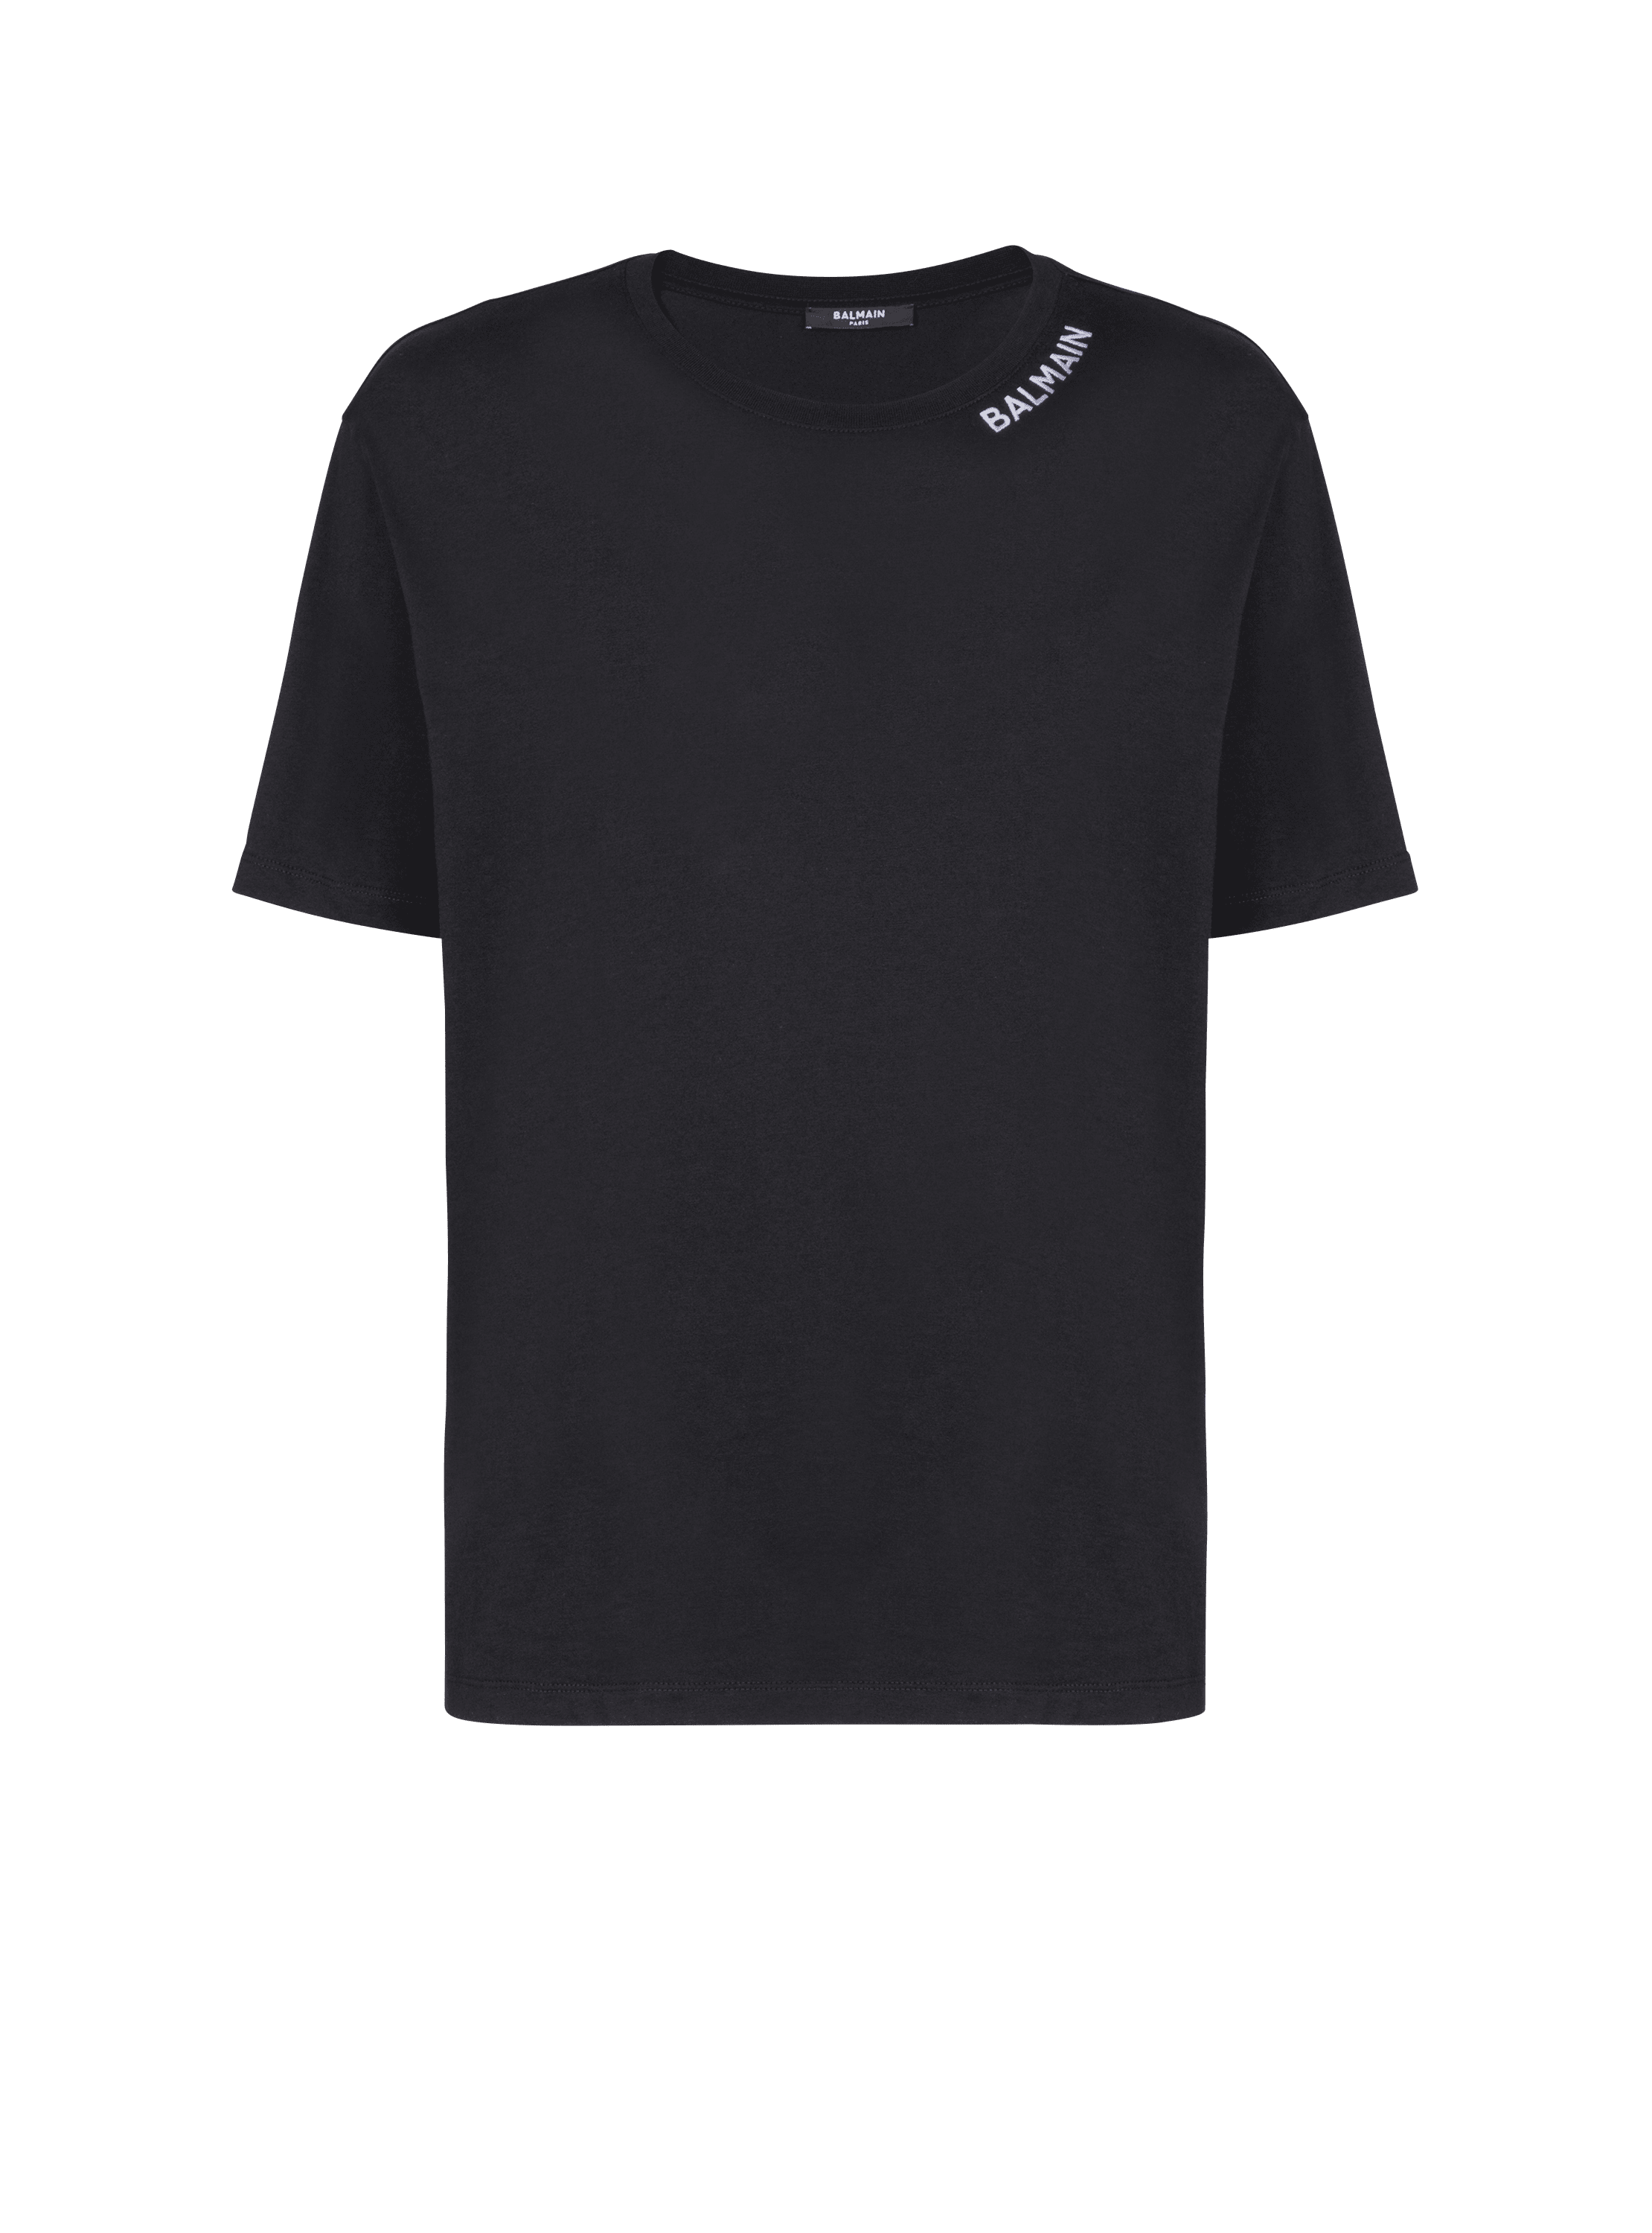 Besticktes Balmain T-Shirt, schwarz, hi-res